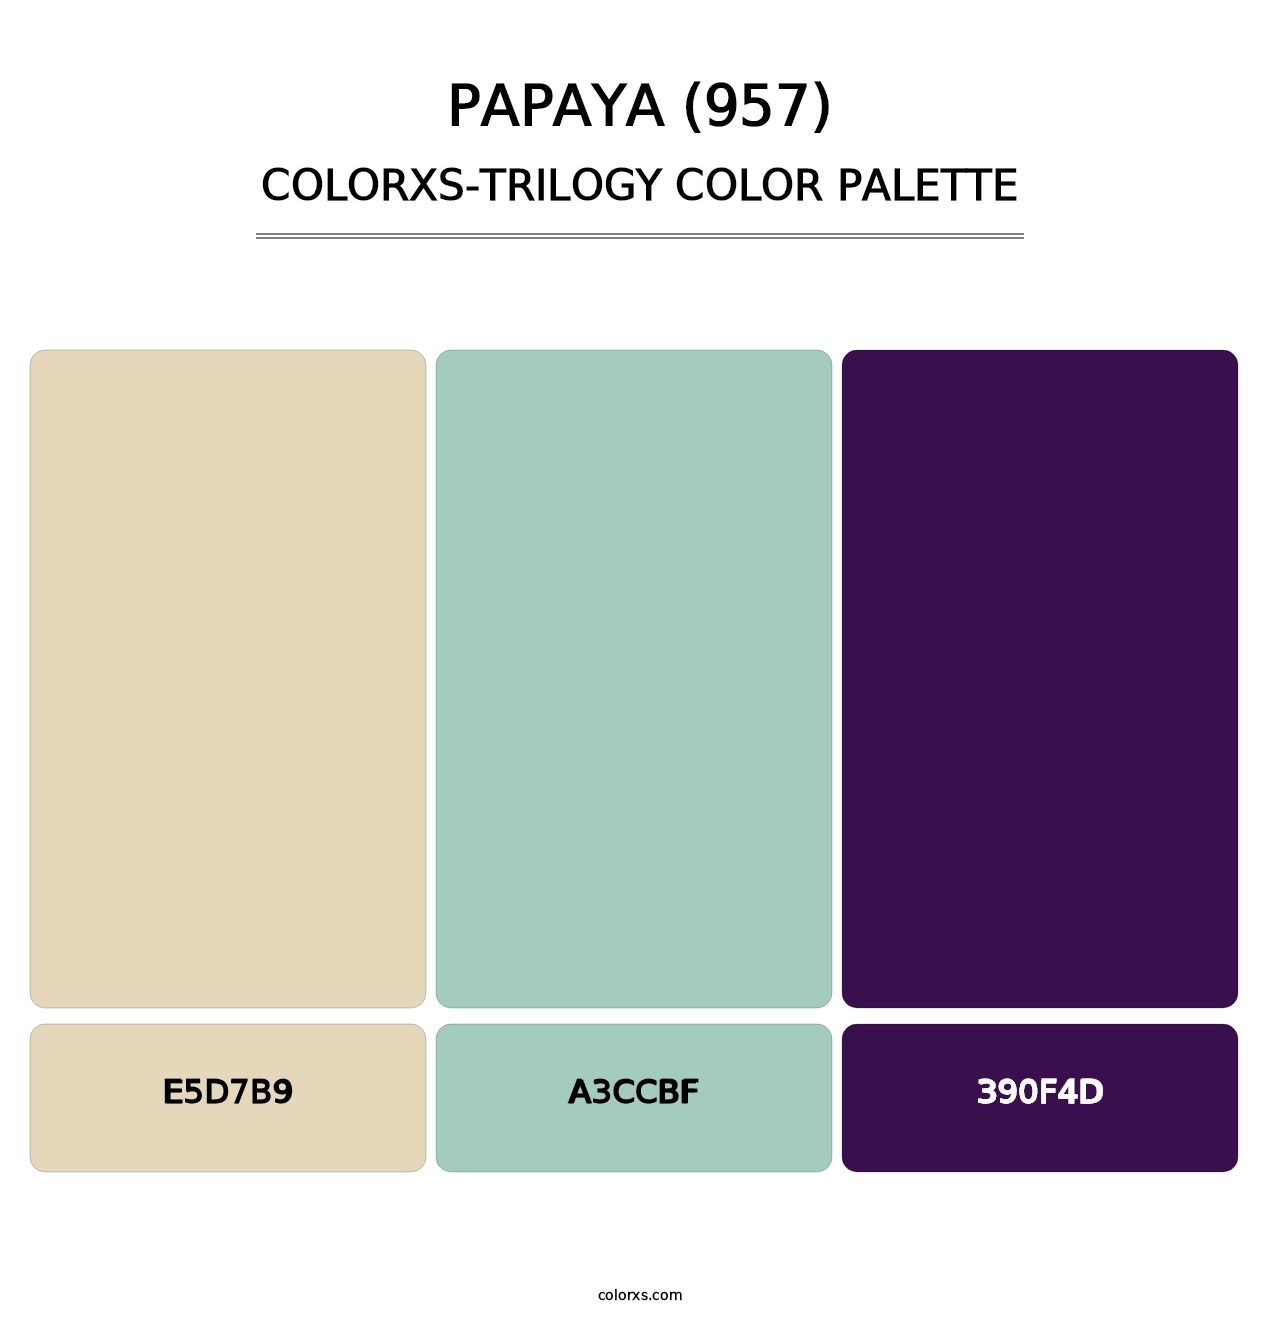 Papaya (957) - Colorxs Trilogy Palette